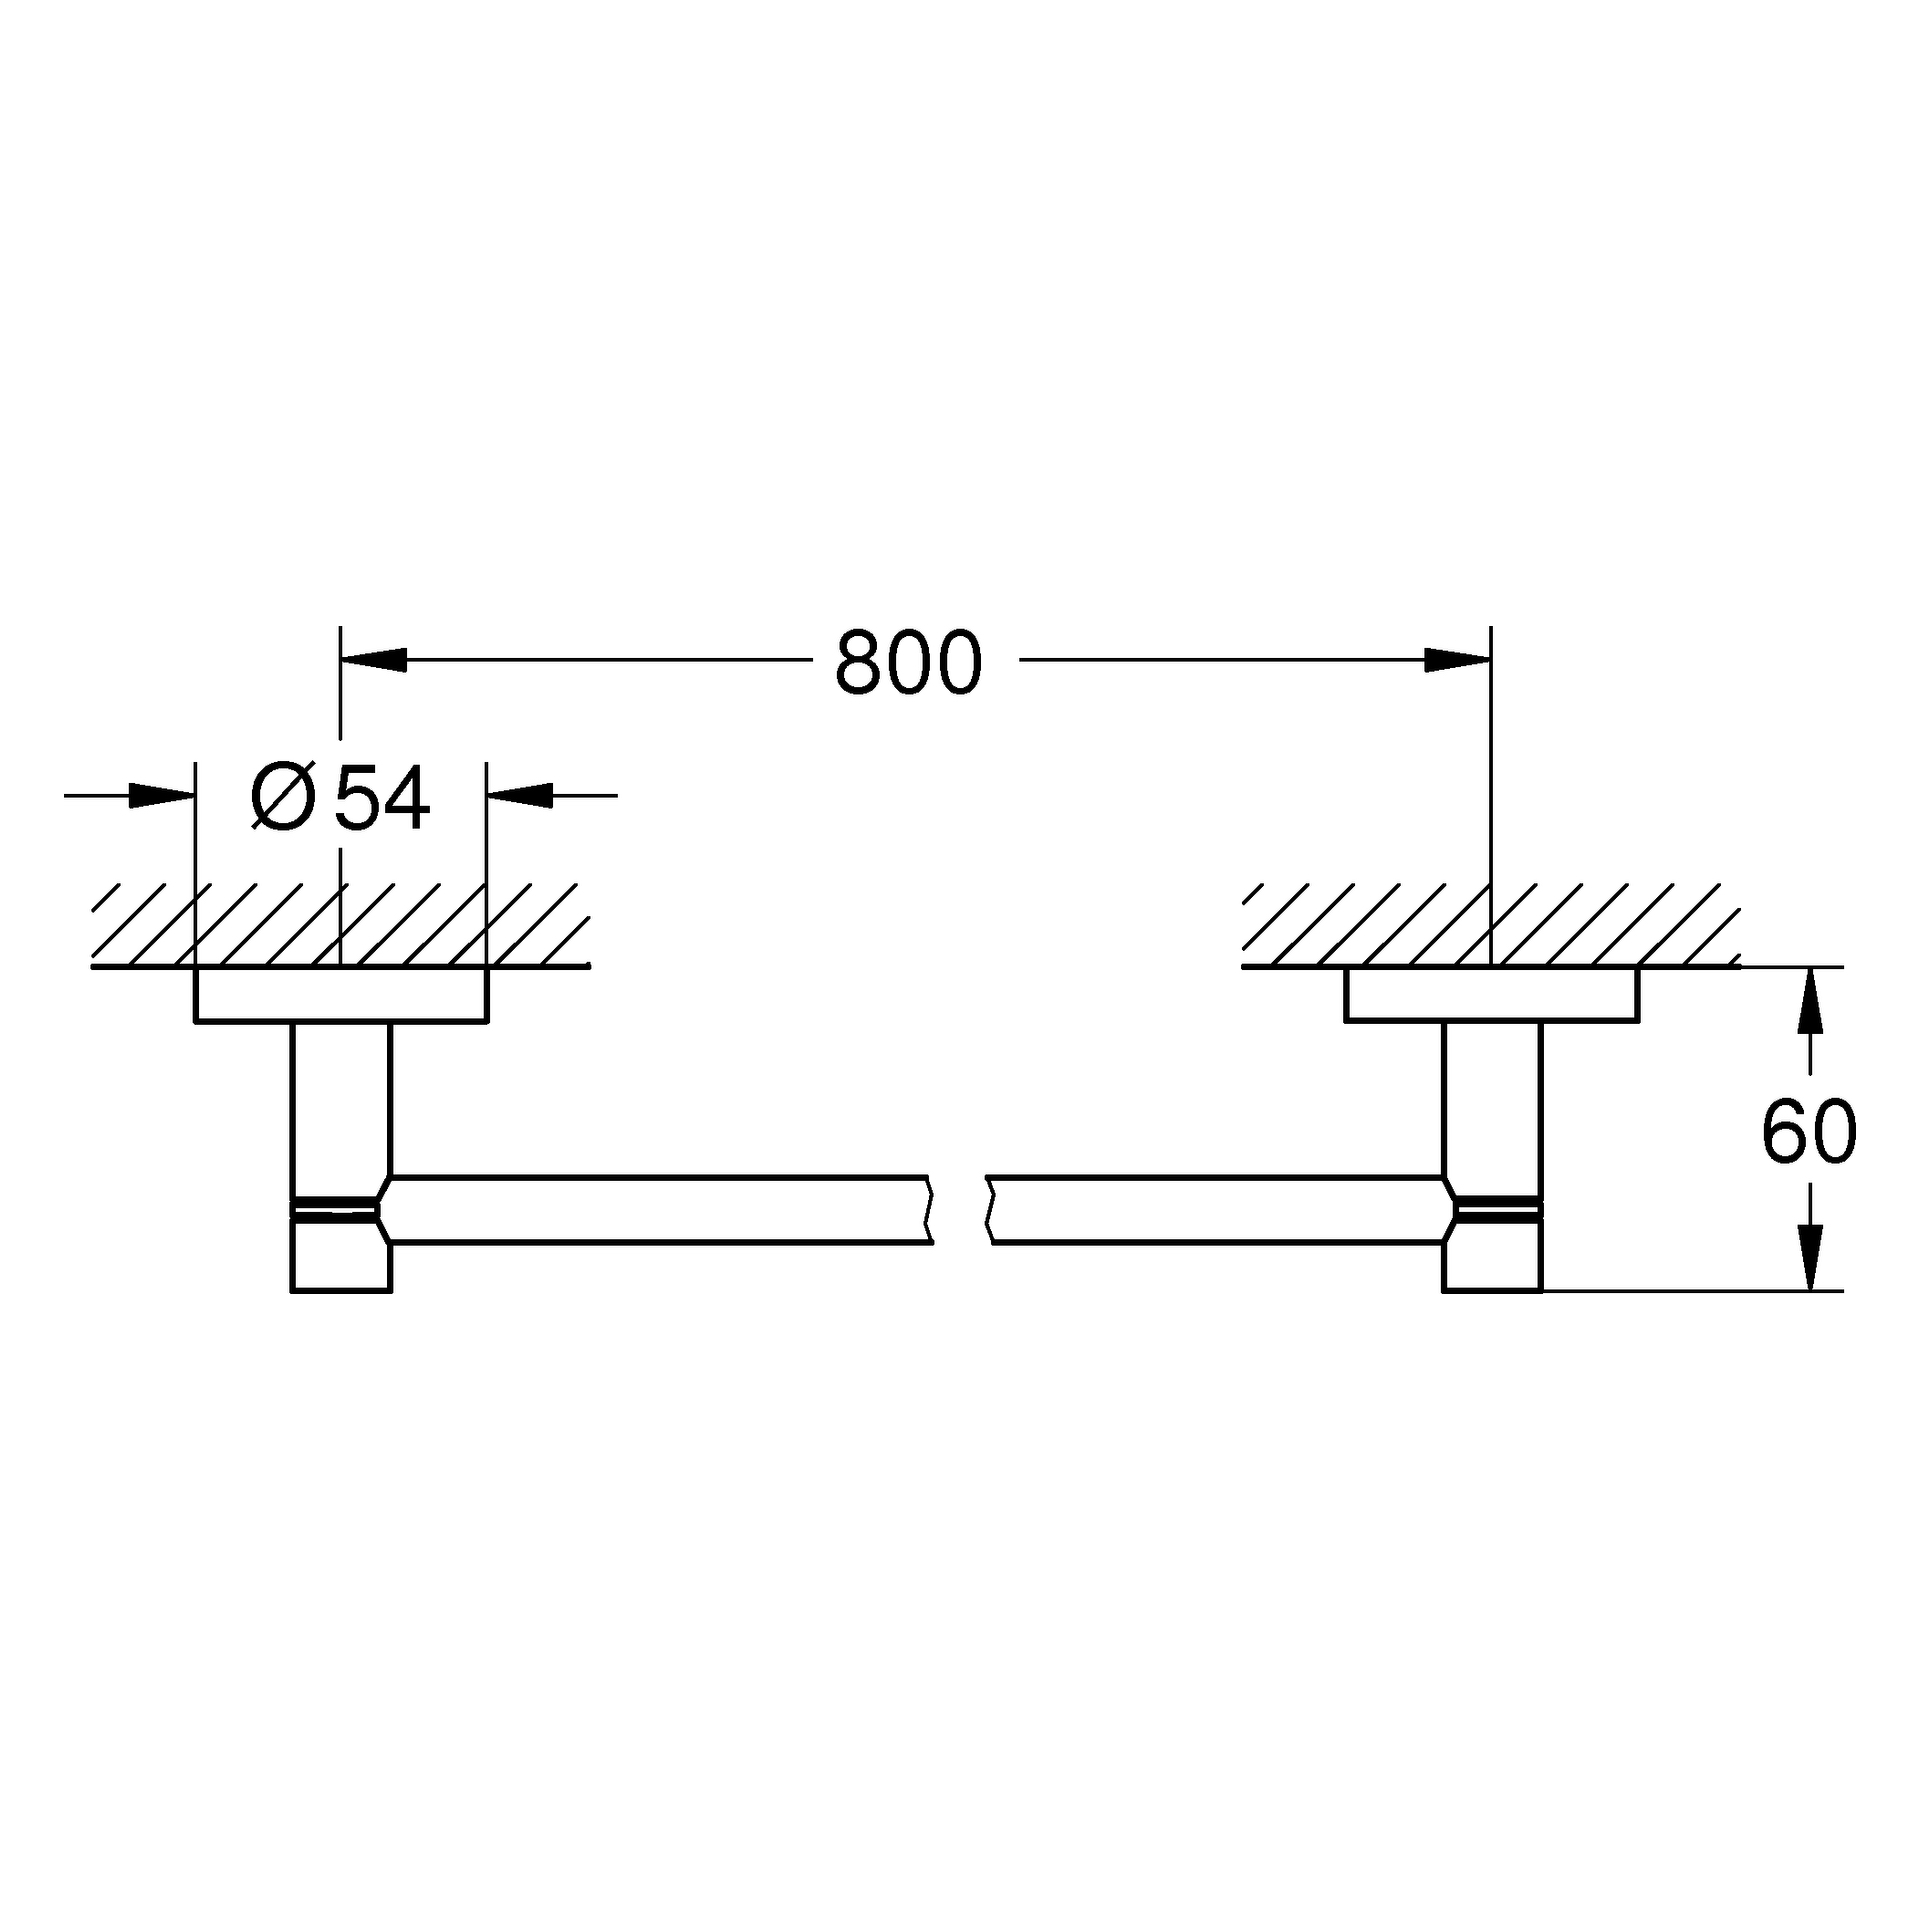 Badetuchhalter Essentials 40386_1, 854 mm, chrom